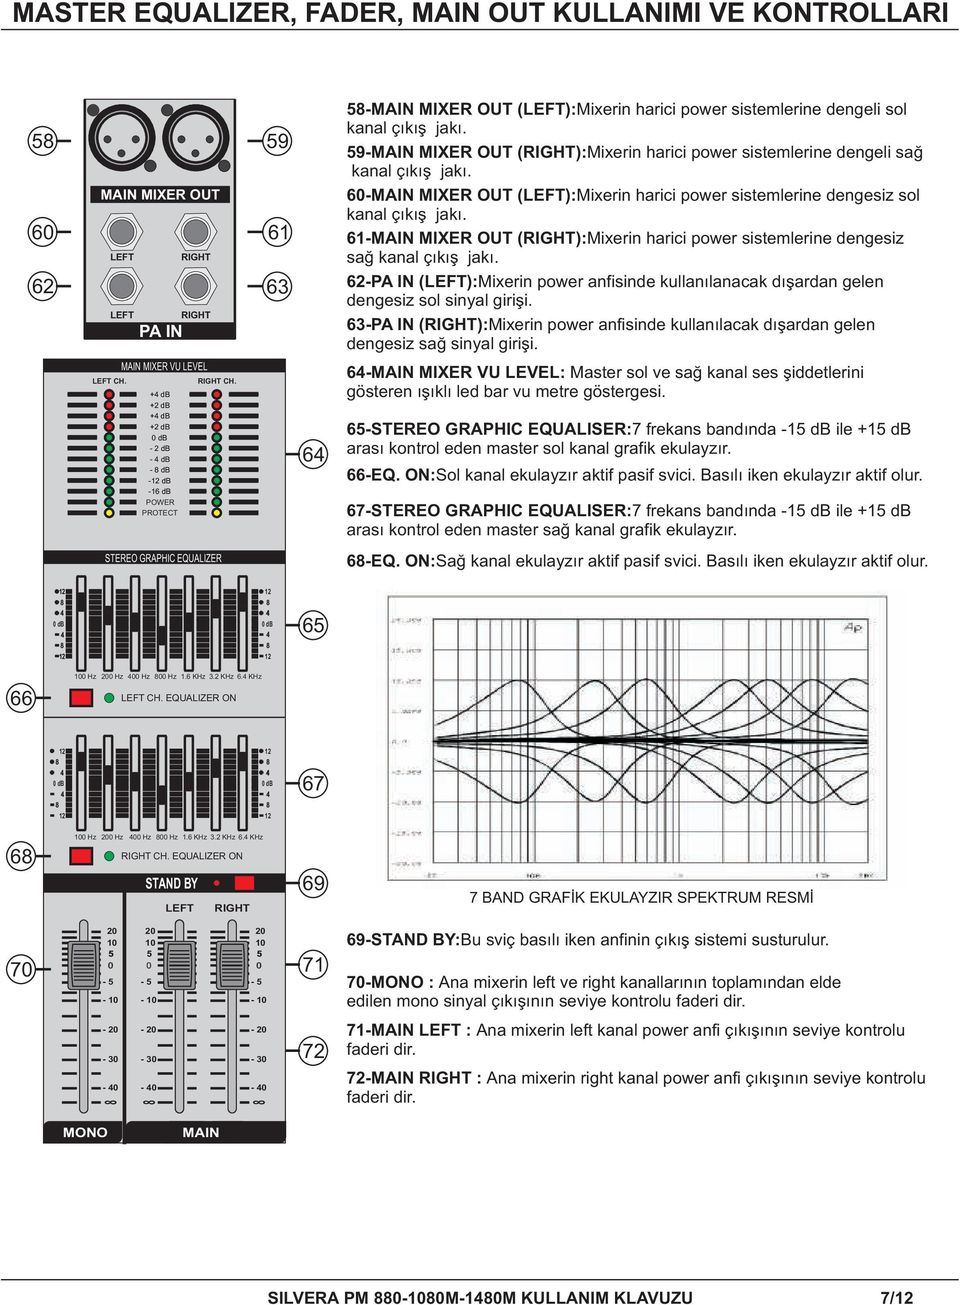 -MAIN E OUT (EFT):Mixerin harici power sistemlerine dengesiz sol kanal çıkış jakı. -MAIN E OUT (IGHT):Mixerin harici power sistemlerine dengesiz sağ kanal çıkış jakı.